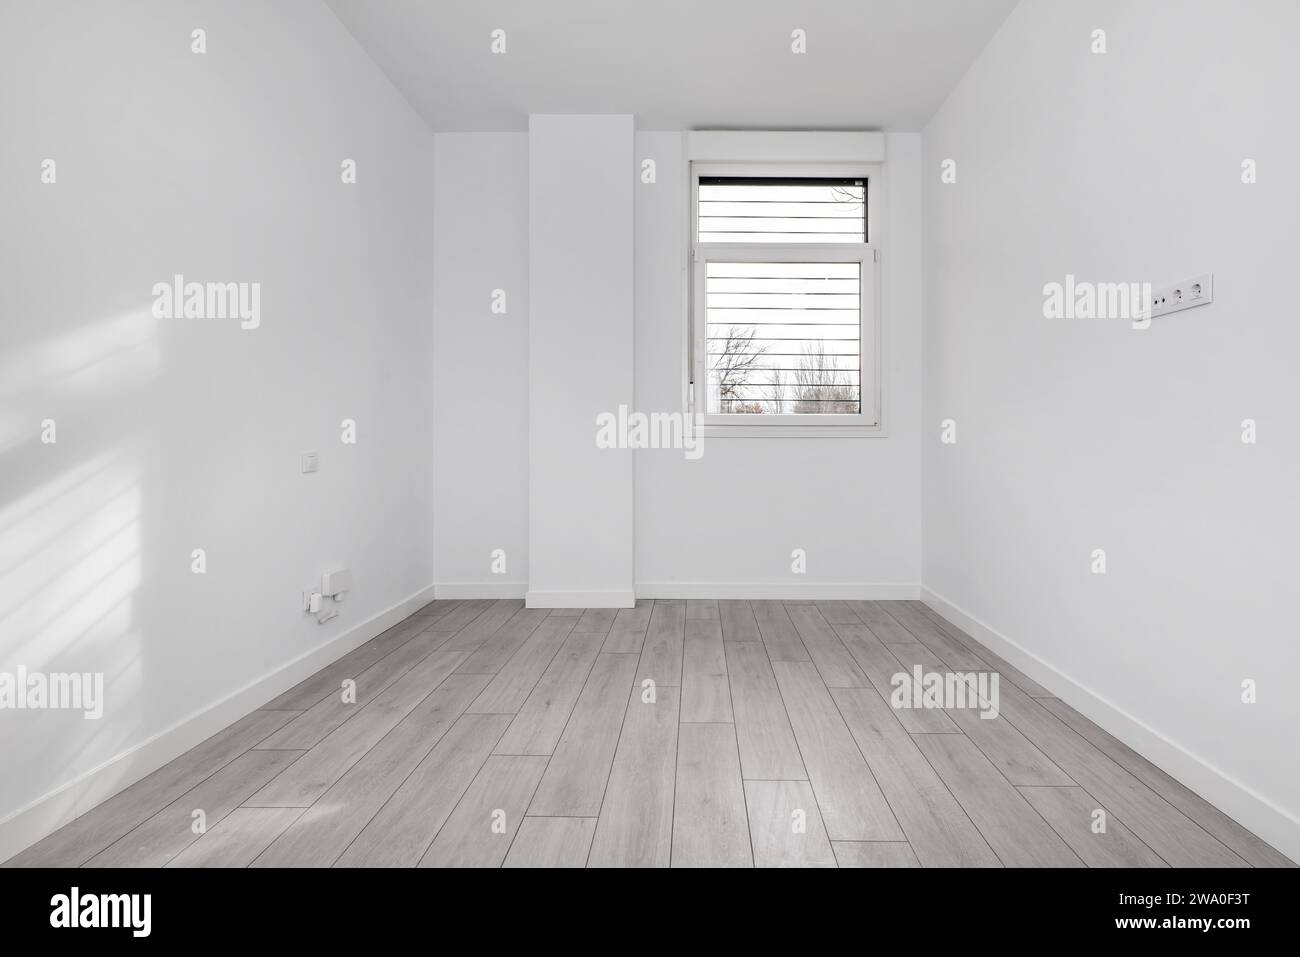 Una camera vuota in una casa in stile loft al piano terra con pavimenti in legno chiaro e una finestra in alluminio bianco con barre di metallo Foto Stock